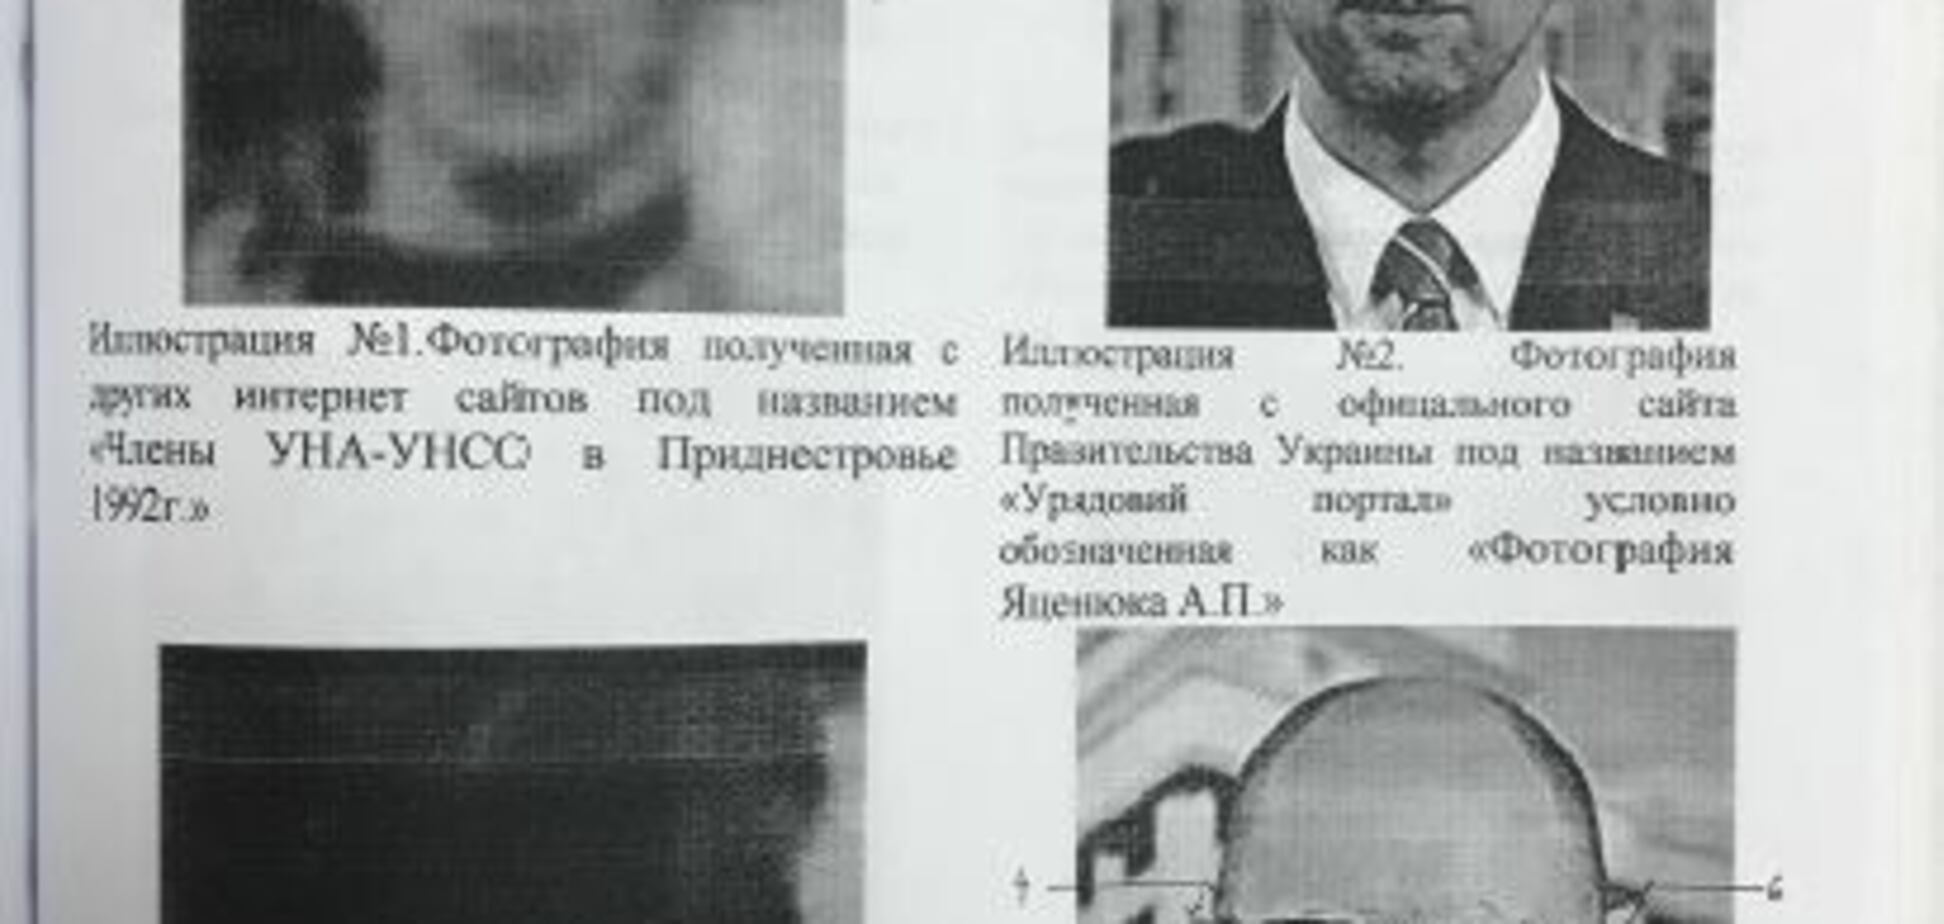 'Яценюк' в Приднестровье: стало известно, кто на самом деле изображен на резонансном фото